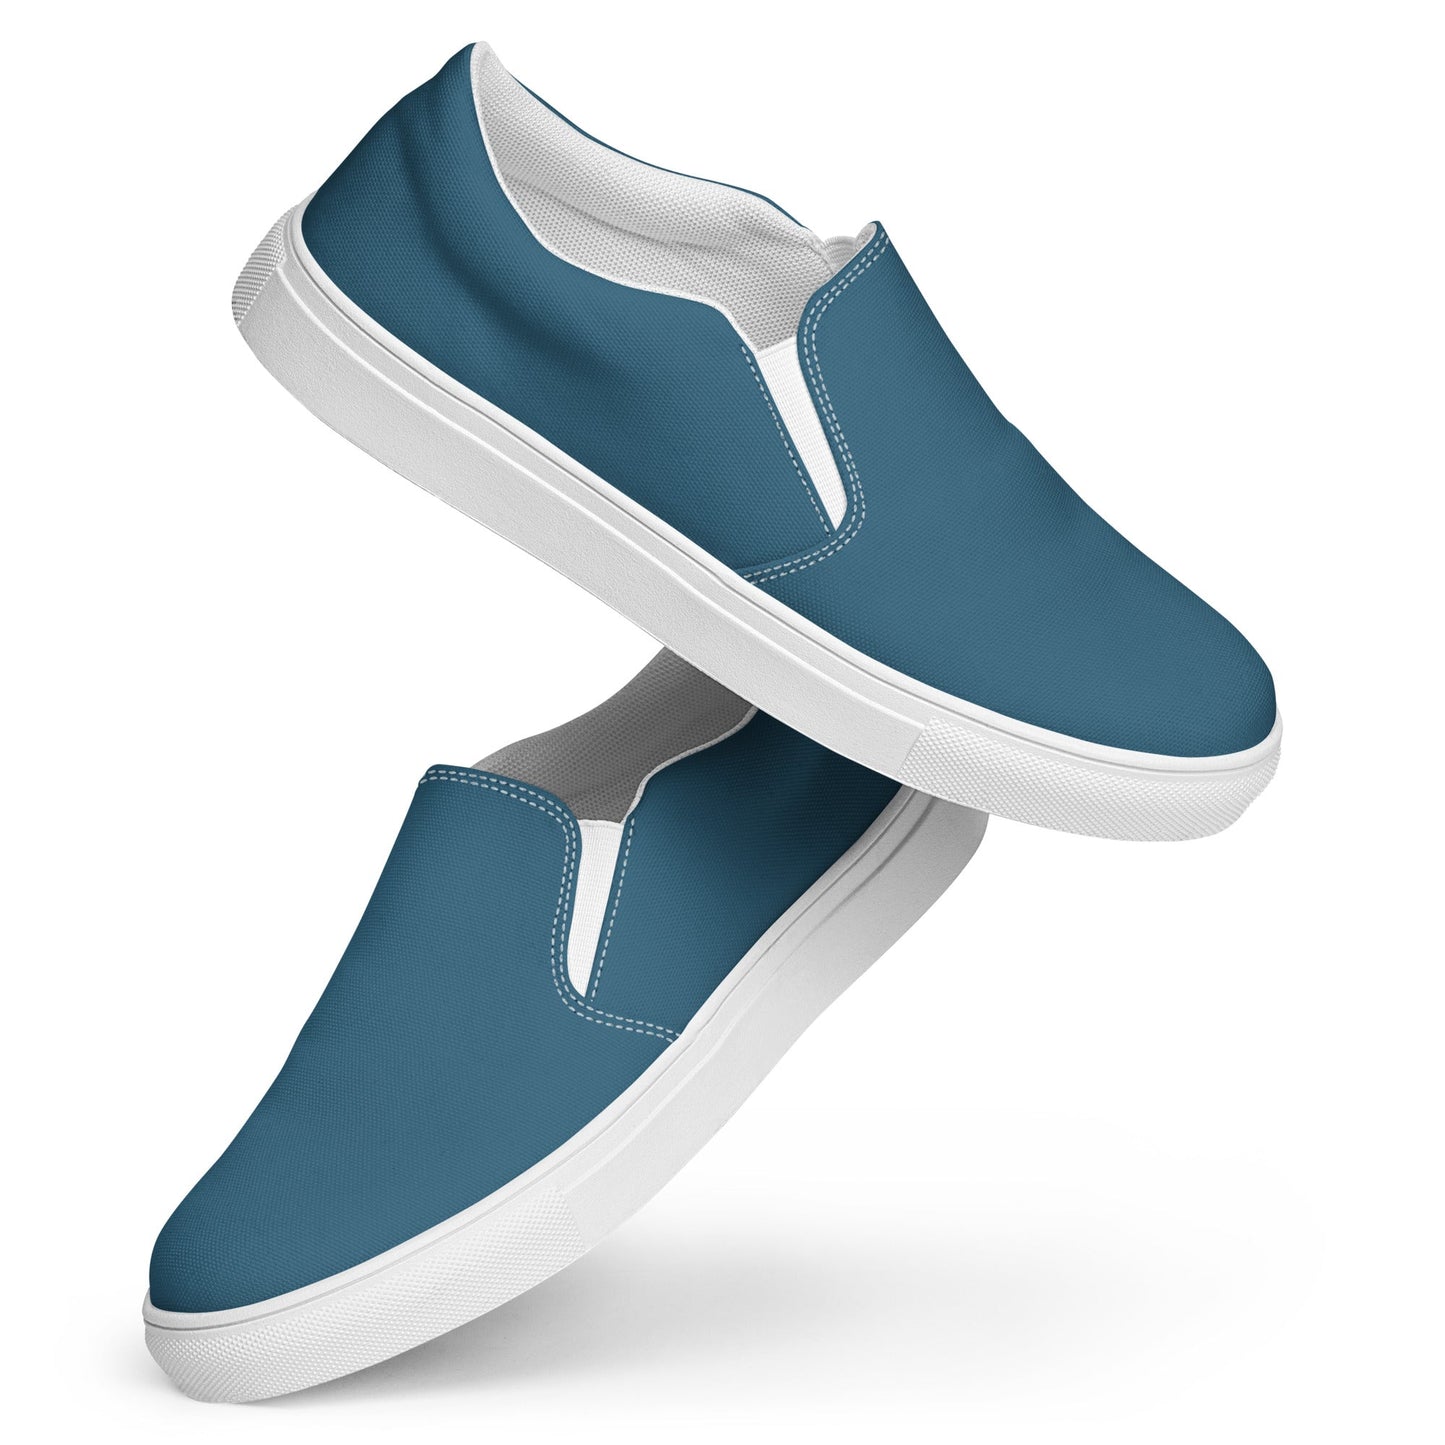 klasneakers Men’s slip-on canvas shoes - Dark Blue